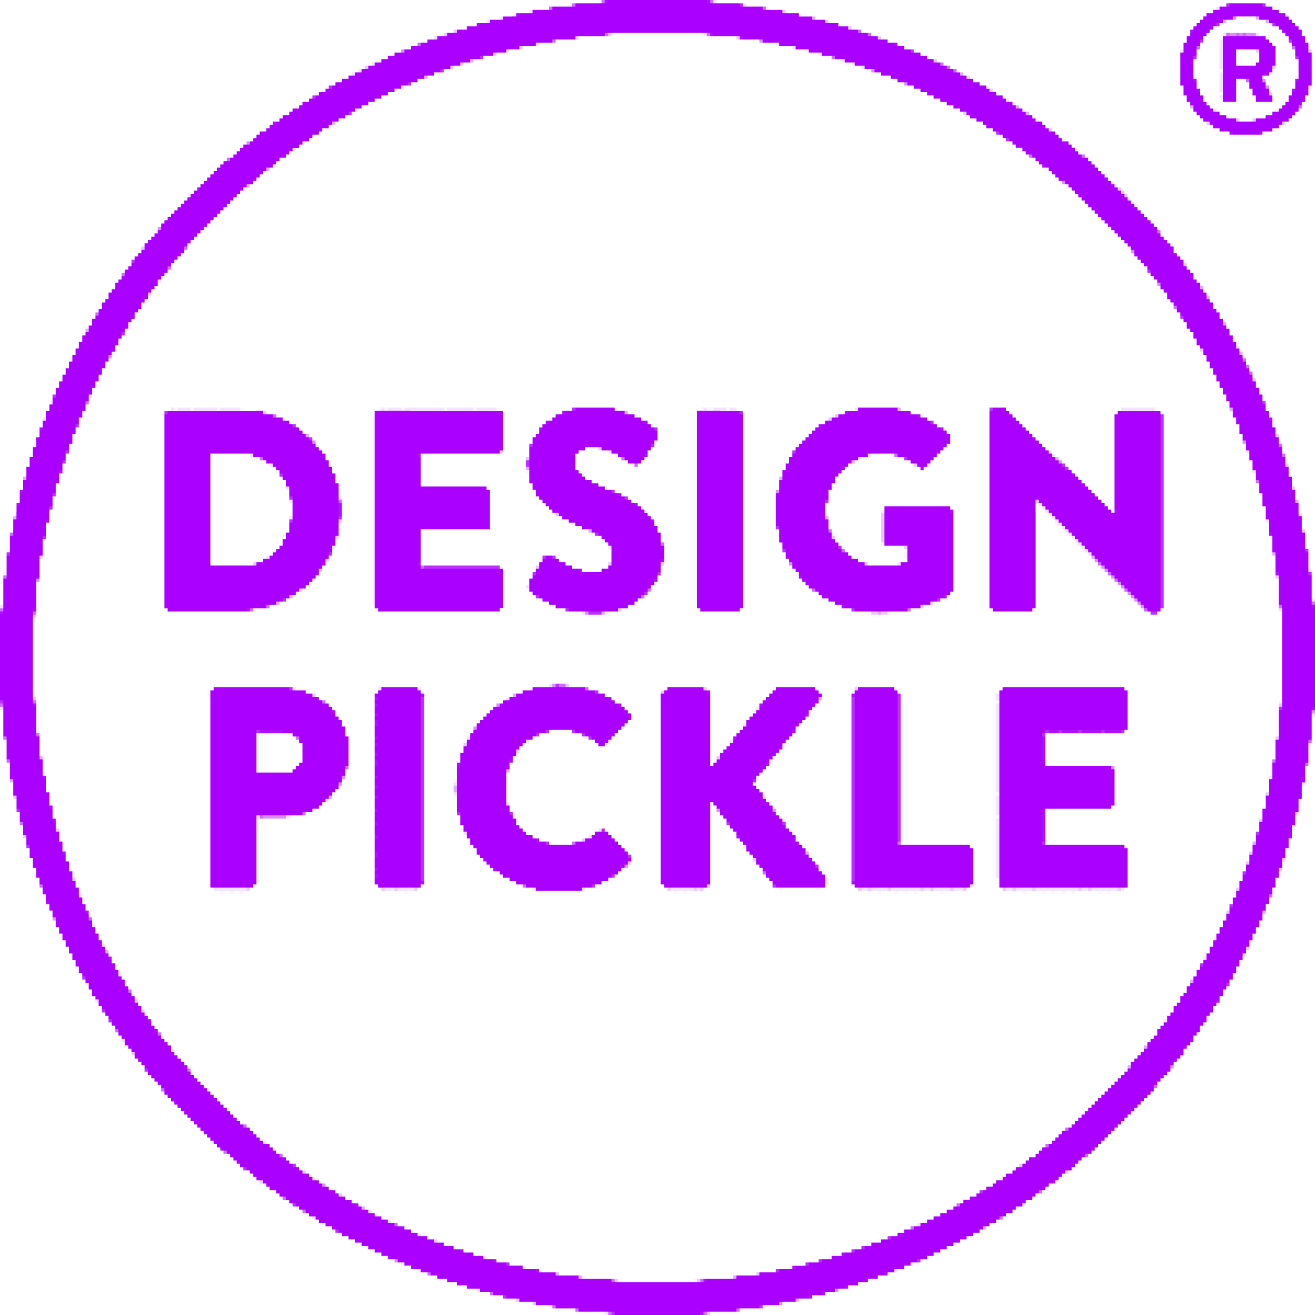 Company - Design Pickle